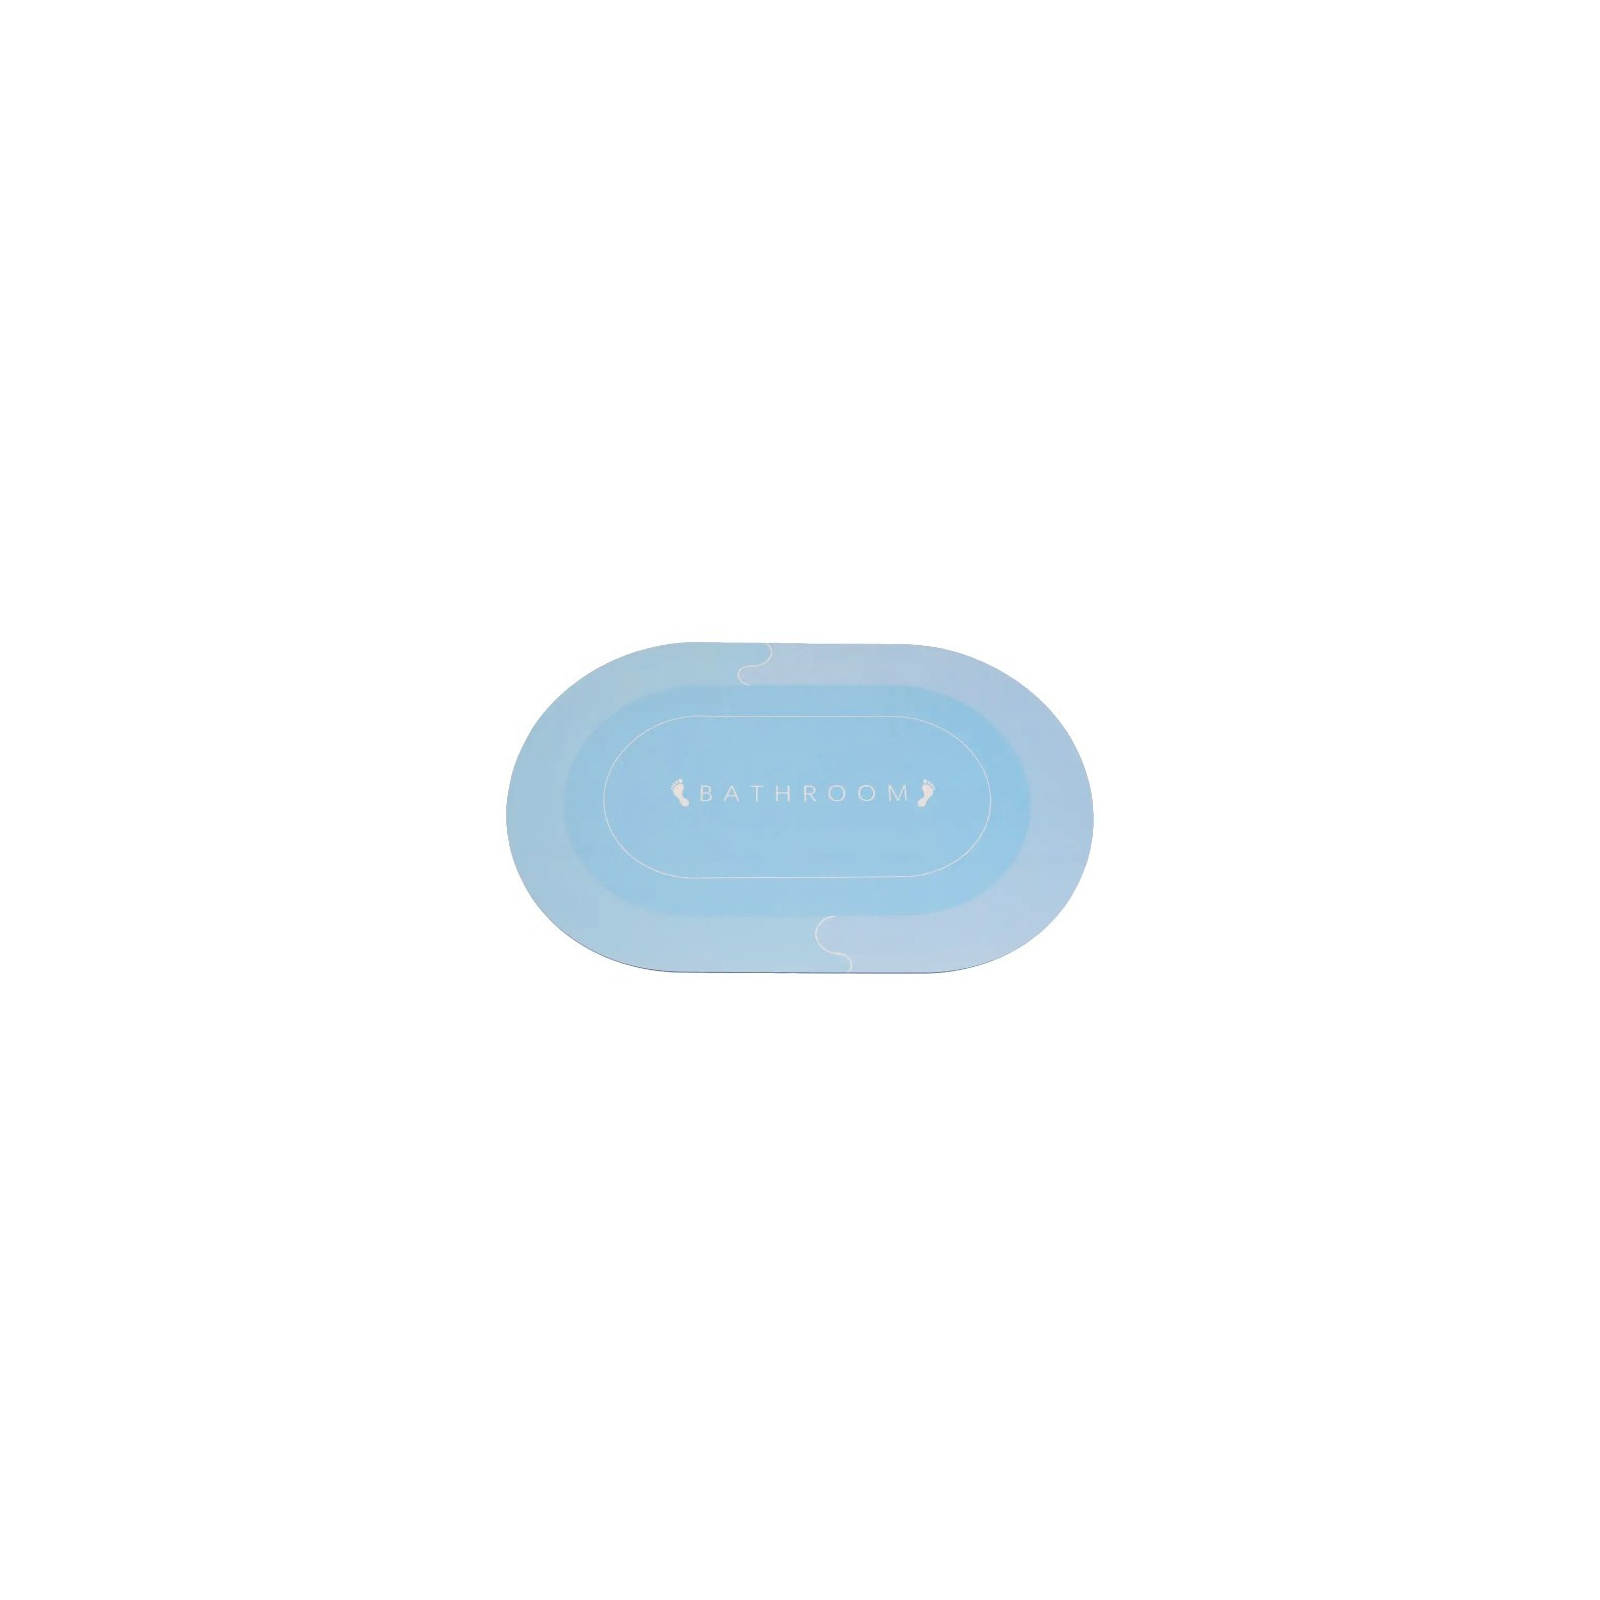 Коврик для ванной Stenson суперпоглощающий 50 х 80 см овальный светло-синий (R30940 l.blue) изображение 3